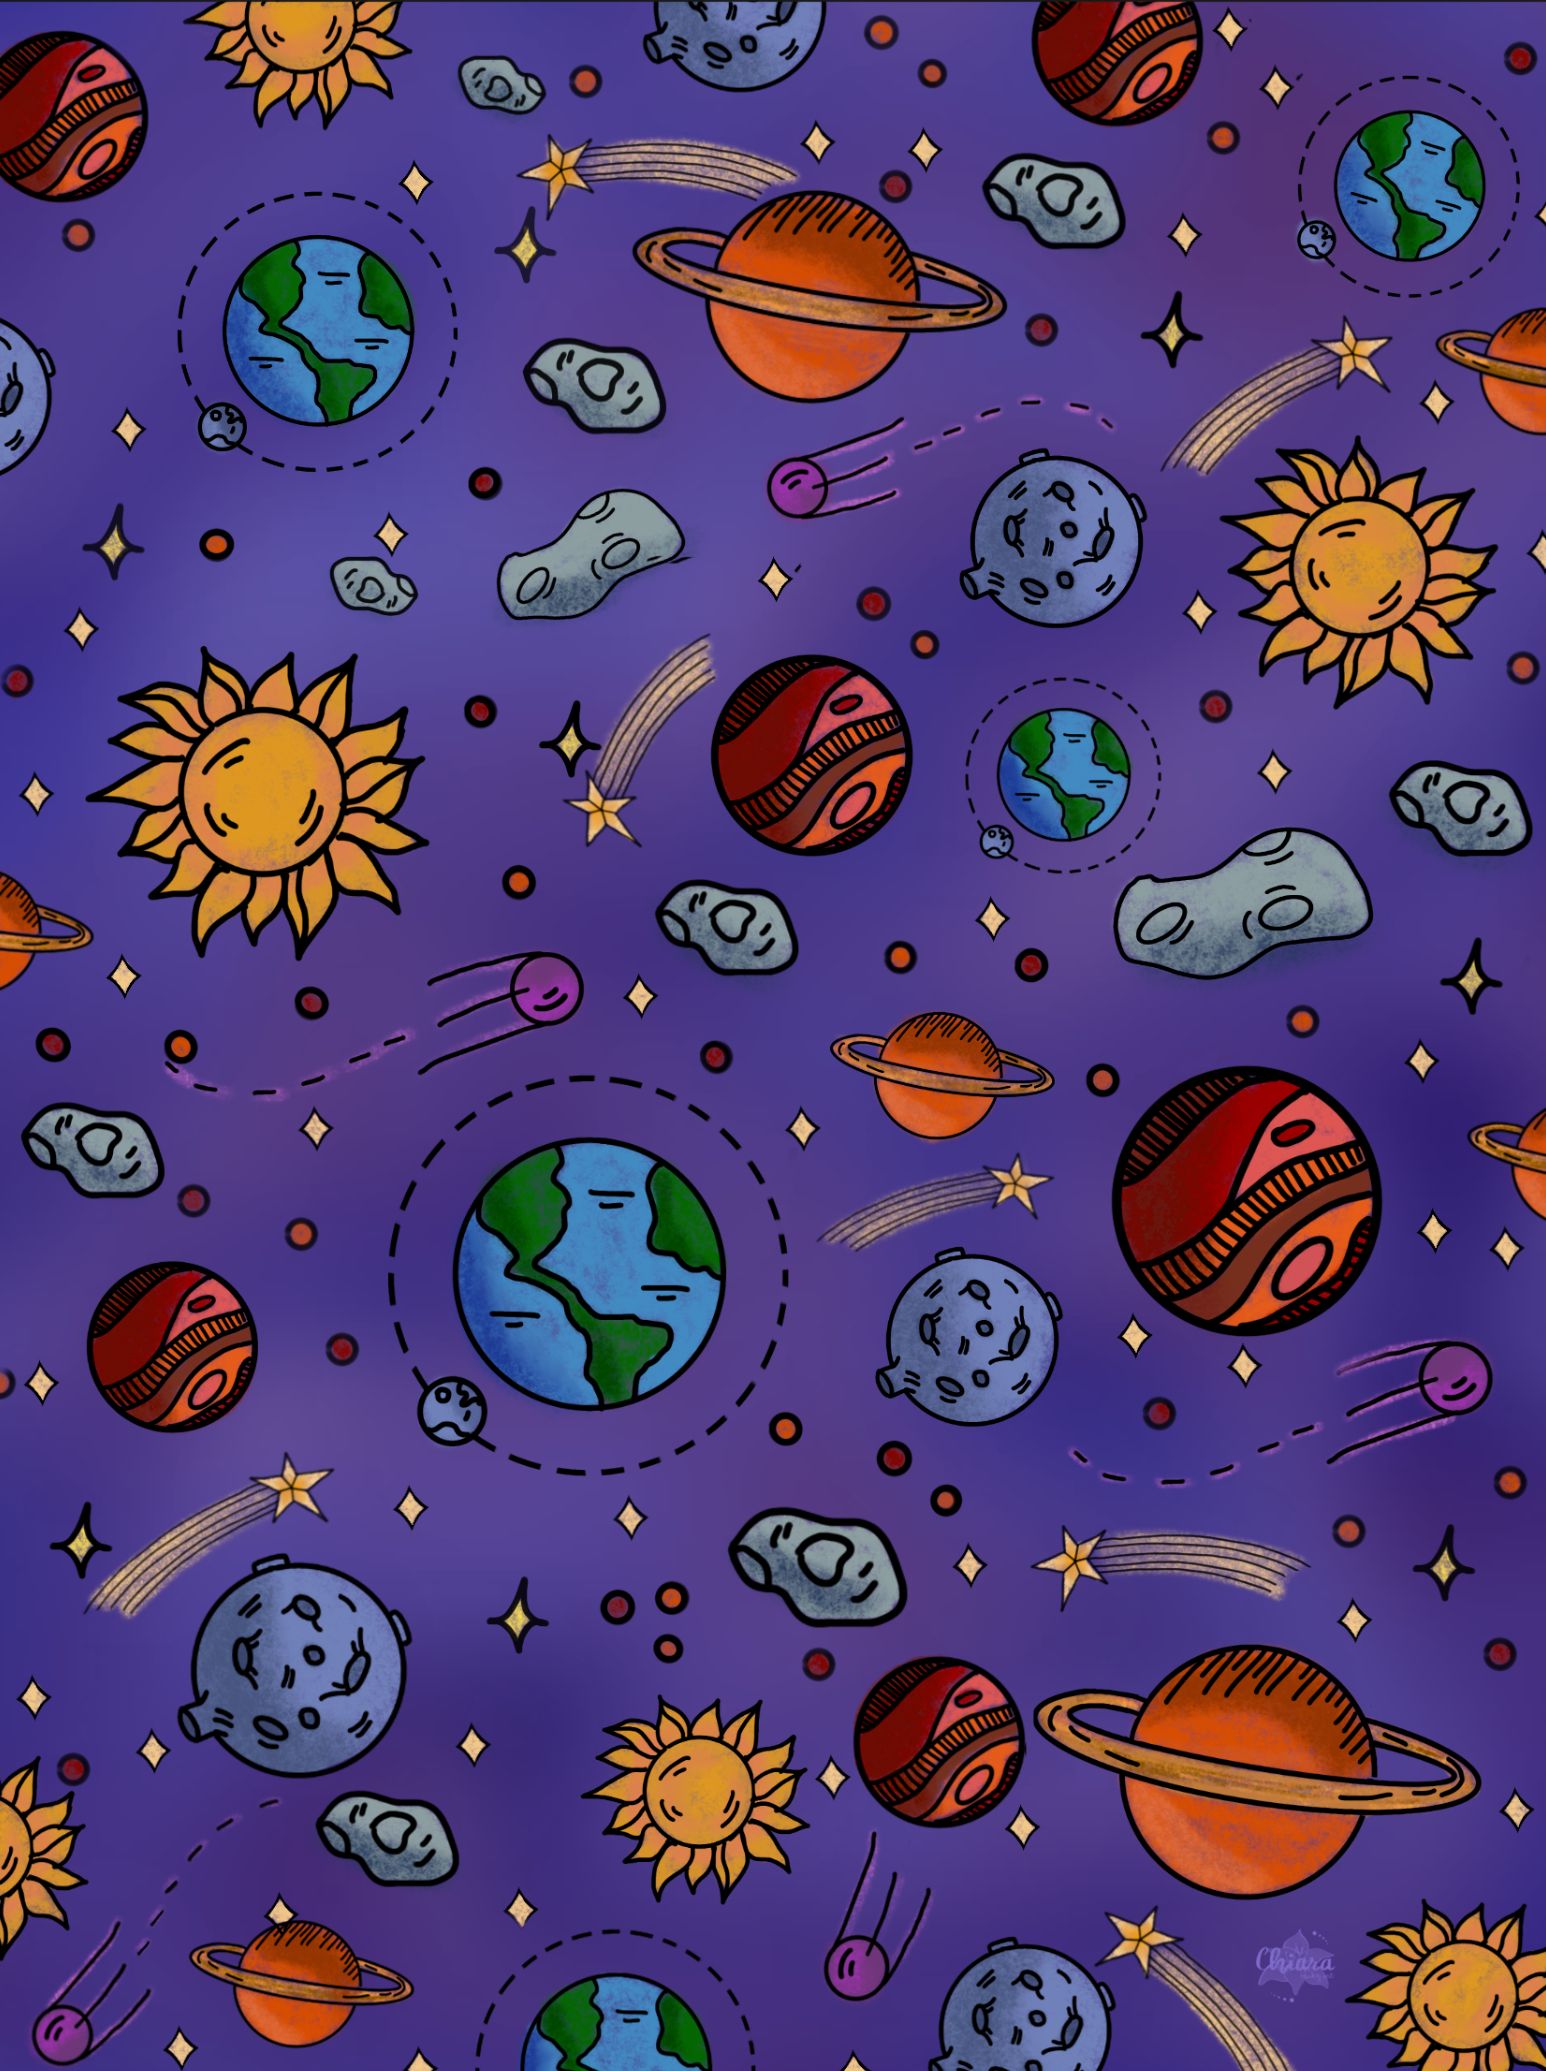 Space doodle wallpaper. Space doodles, Doodle cartoon, Doodle coloring